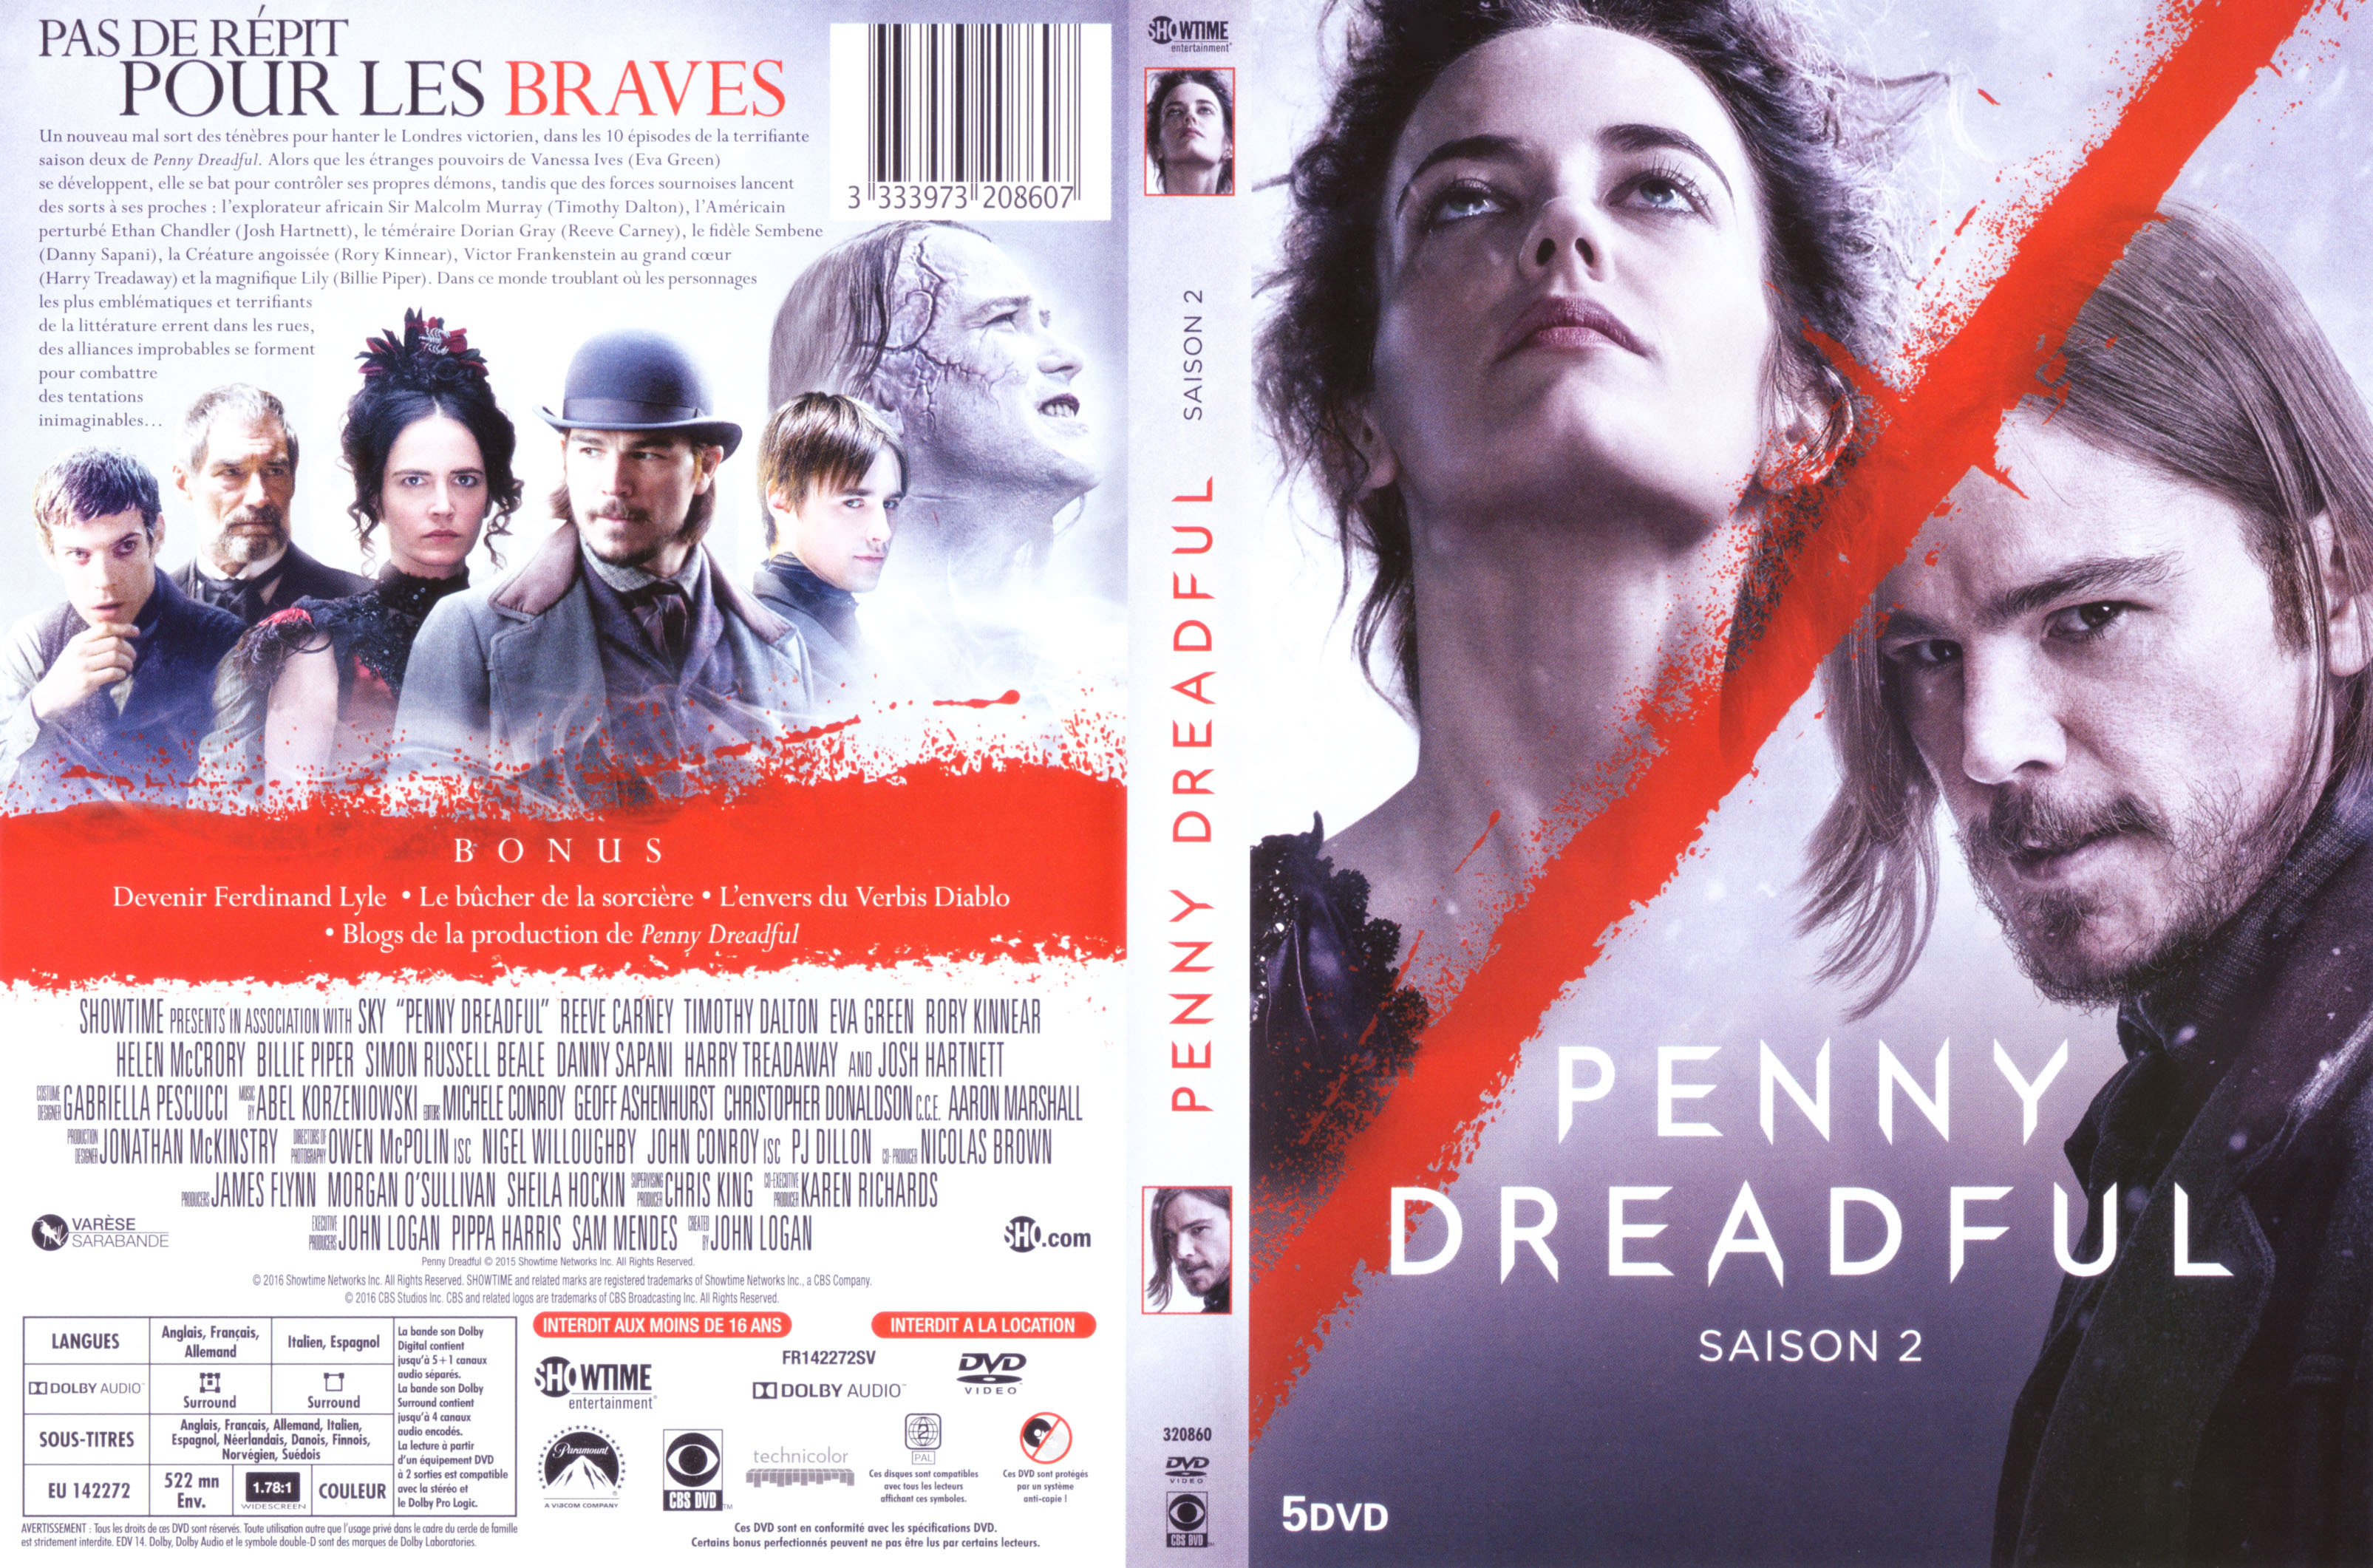 Jaquette DVD Penny dreadful Saison 2